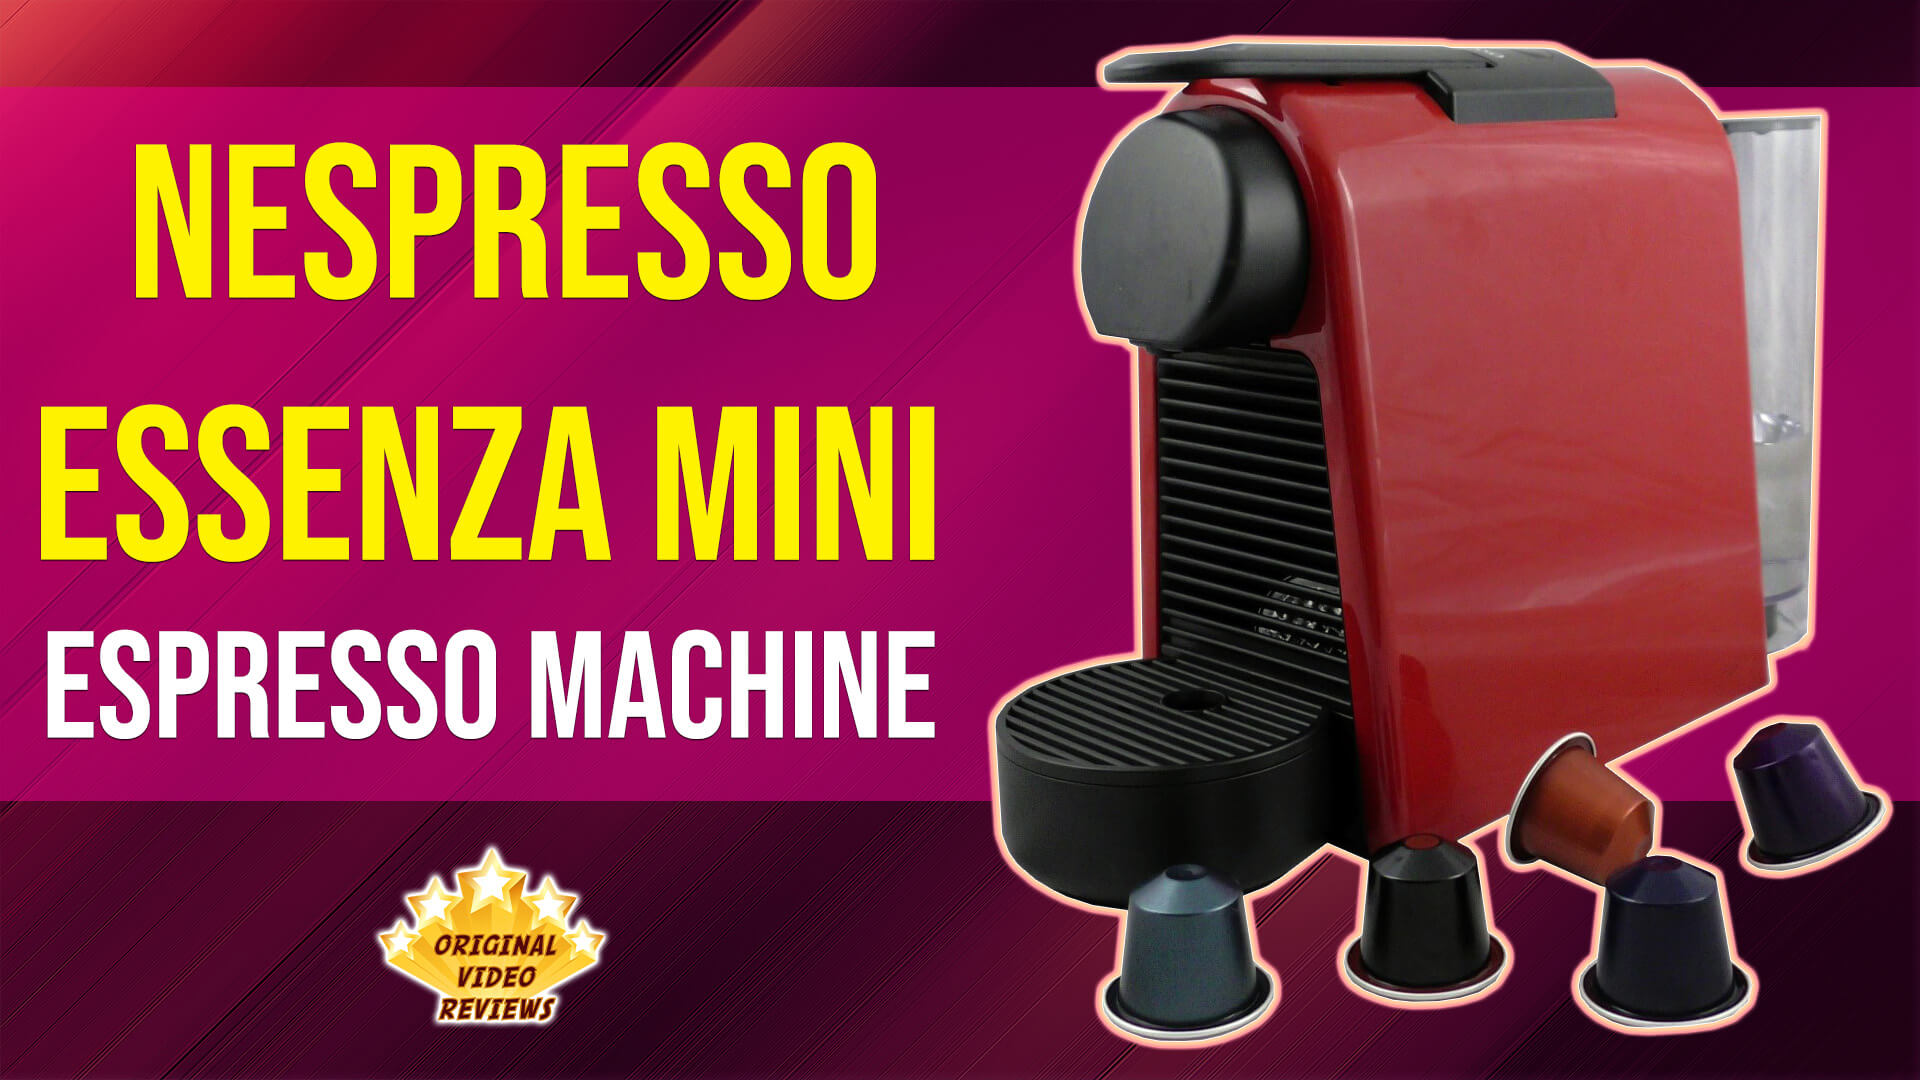 Nespresso Essenza Mini Espresso Machine (Review)